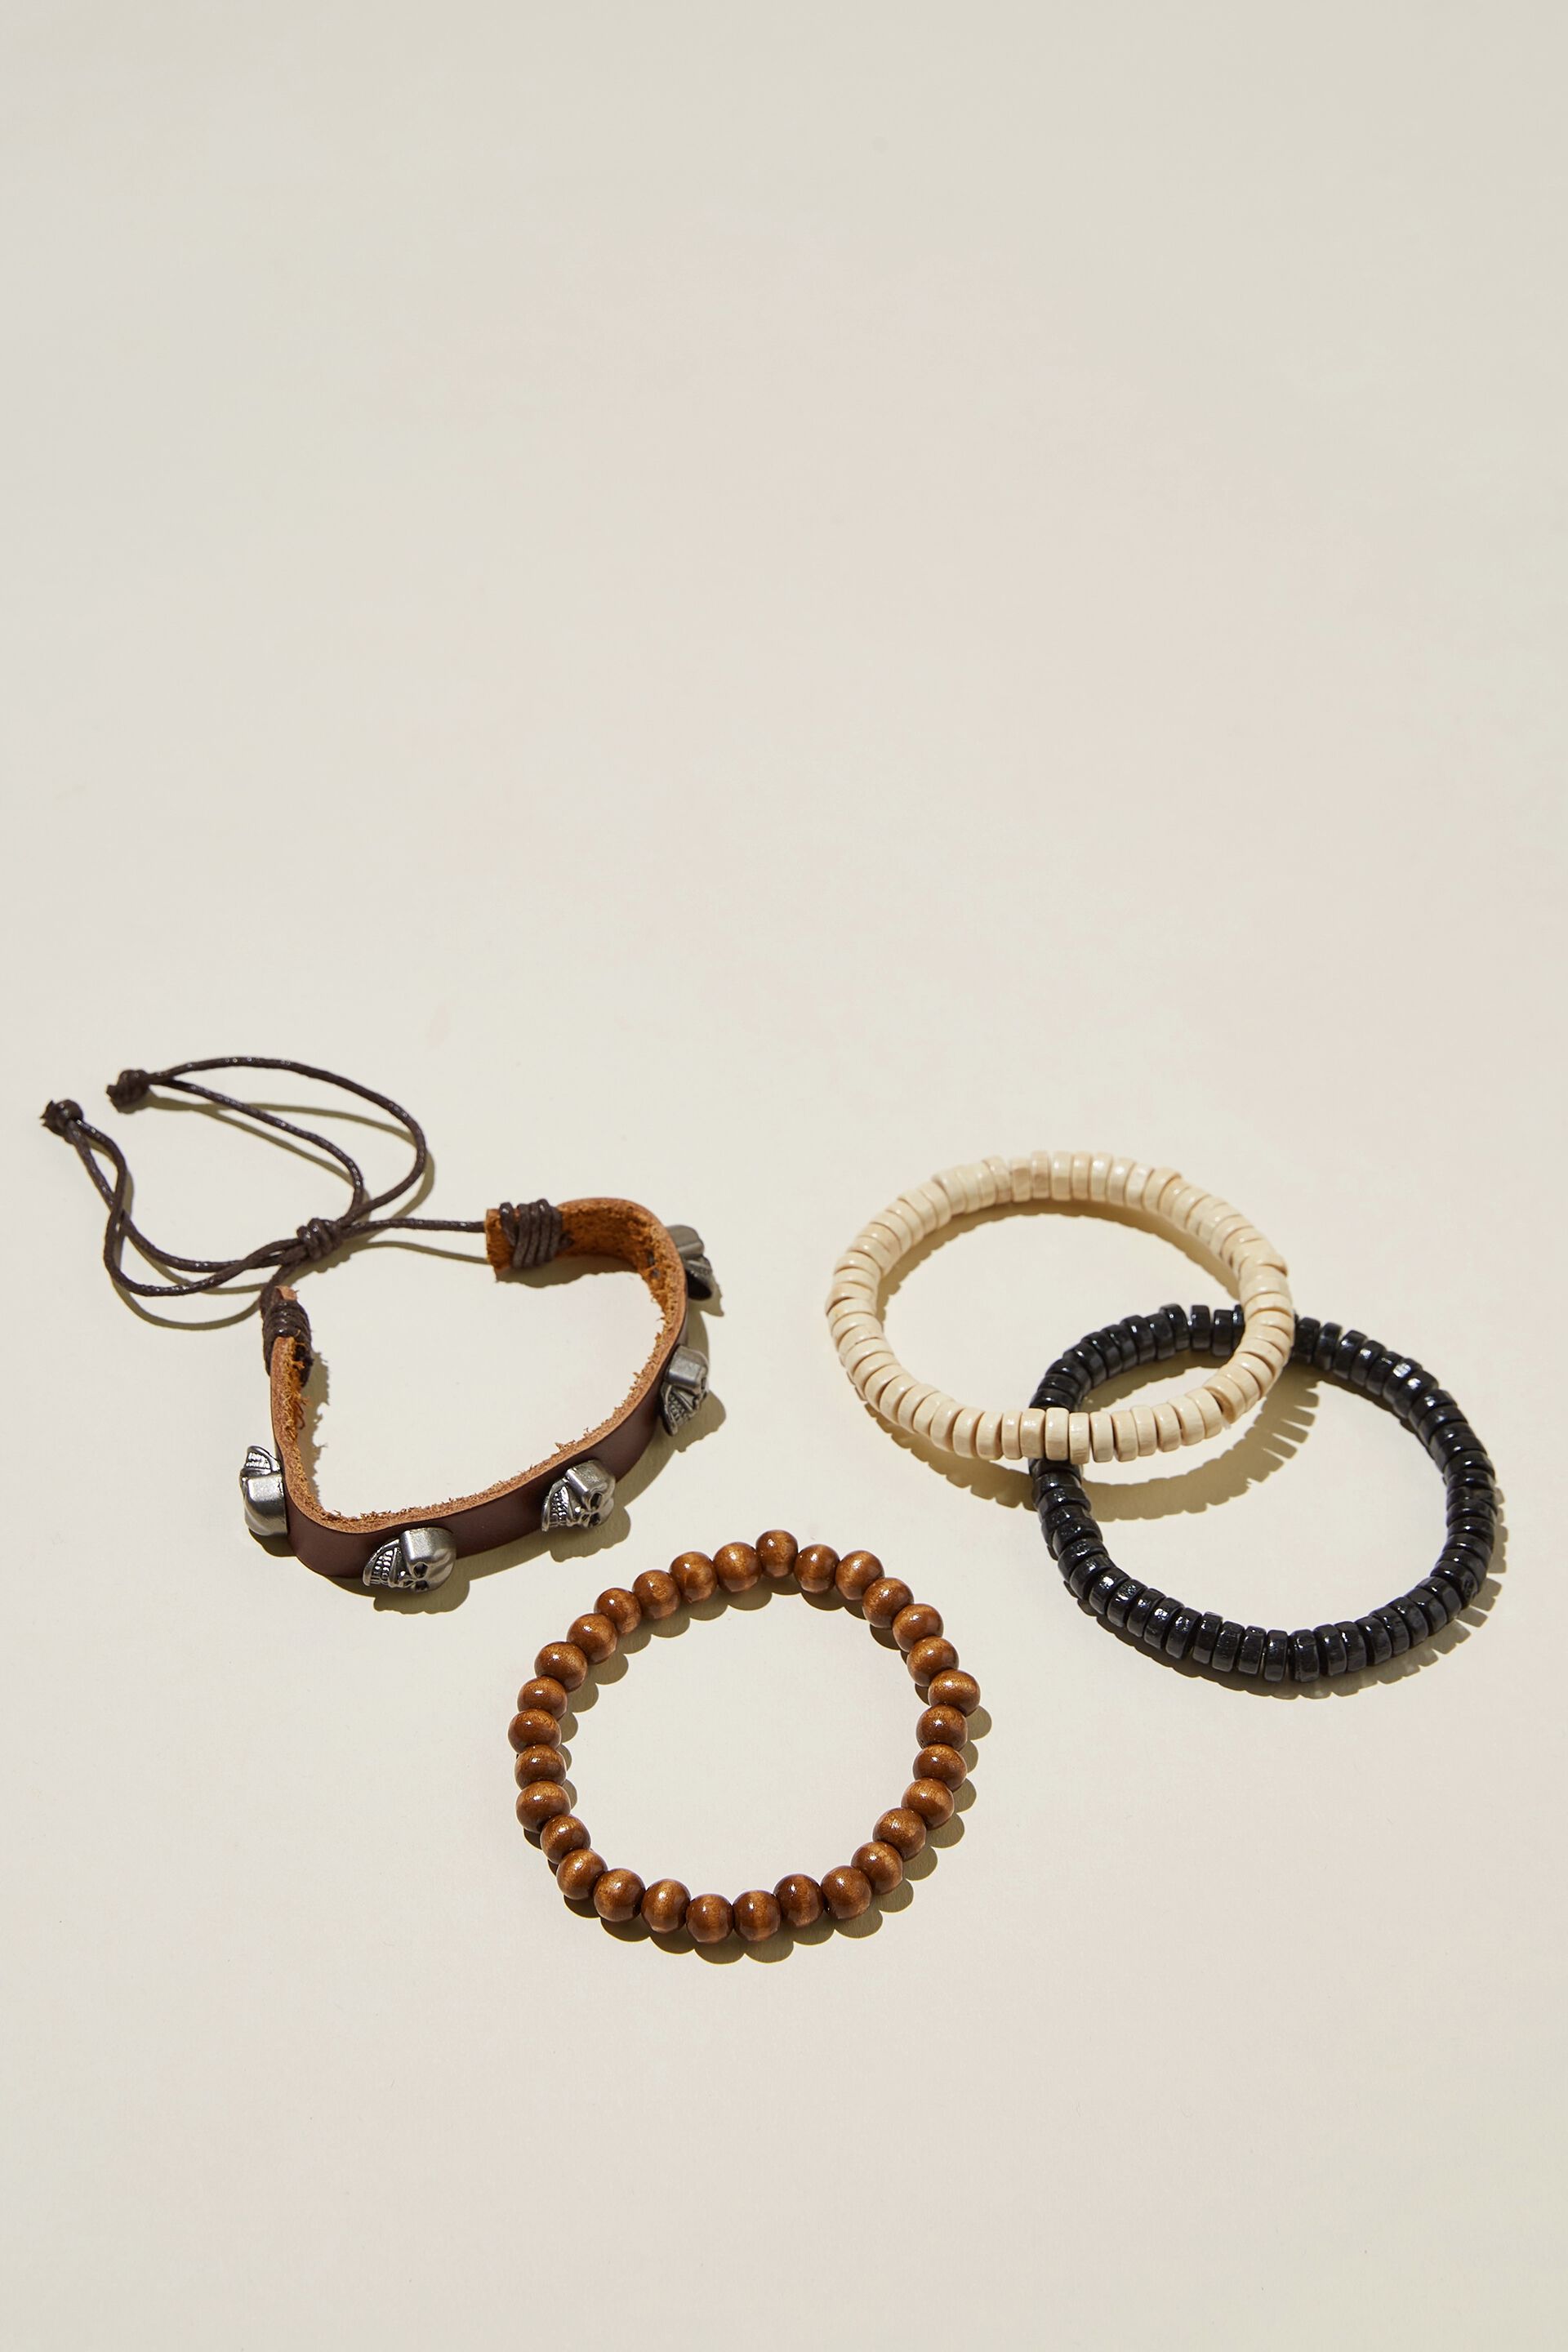 Personalized Men's Bracelets & Jewelry | JoyAmo Jewelry